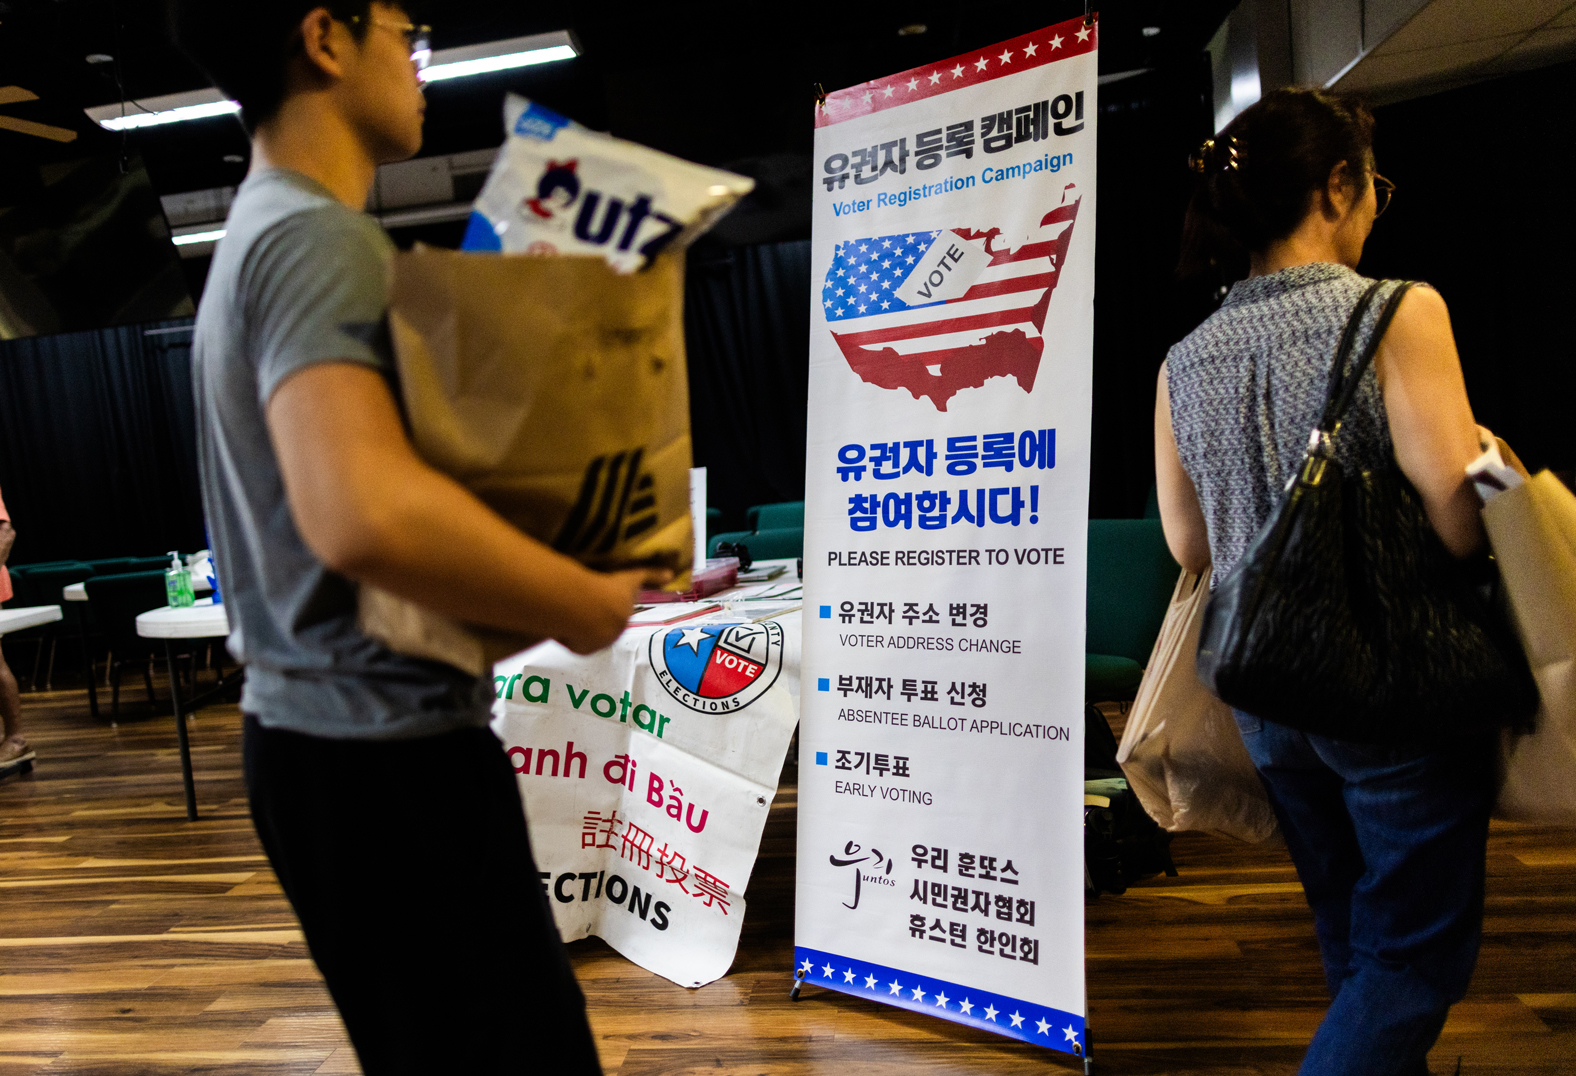 Texas voter registration kiosk at The Korean Community Center of Houston